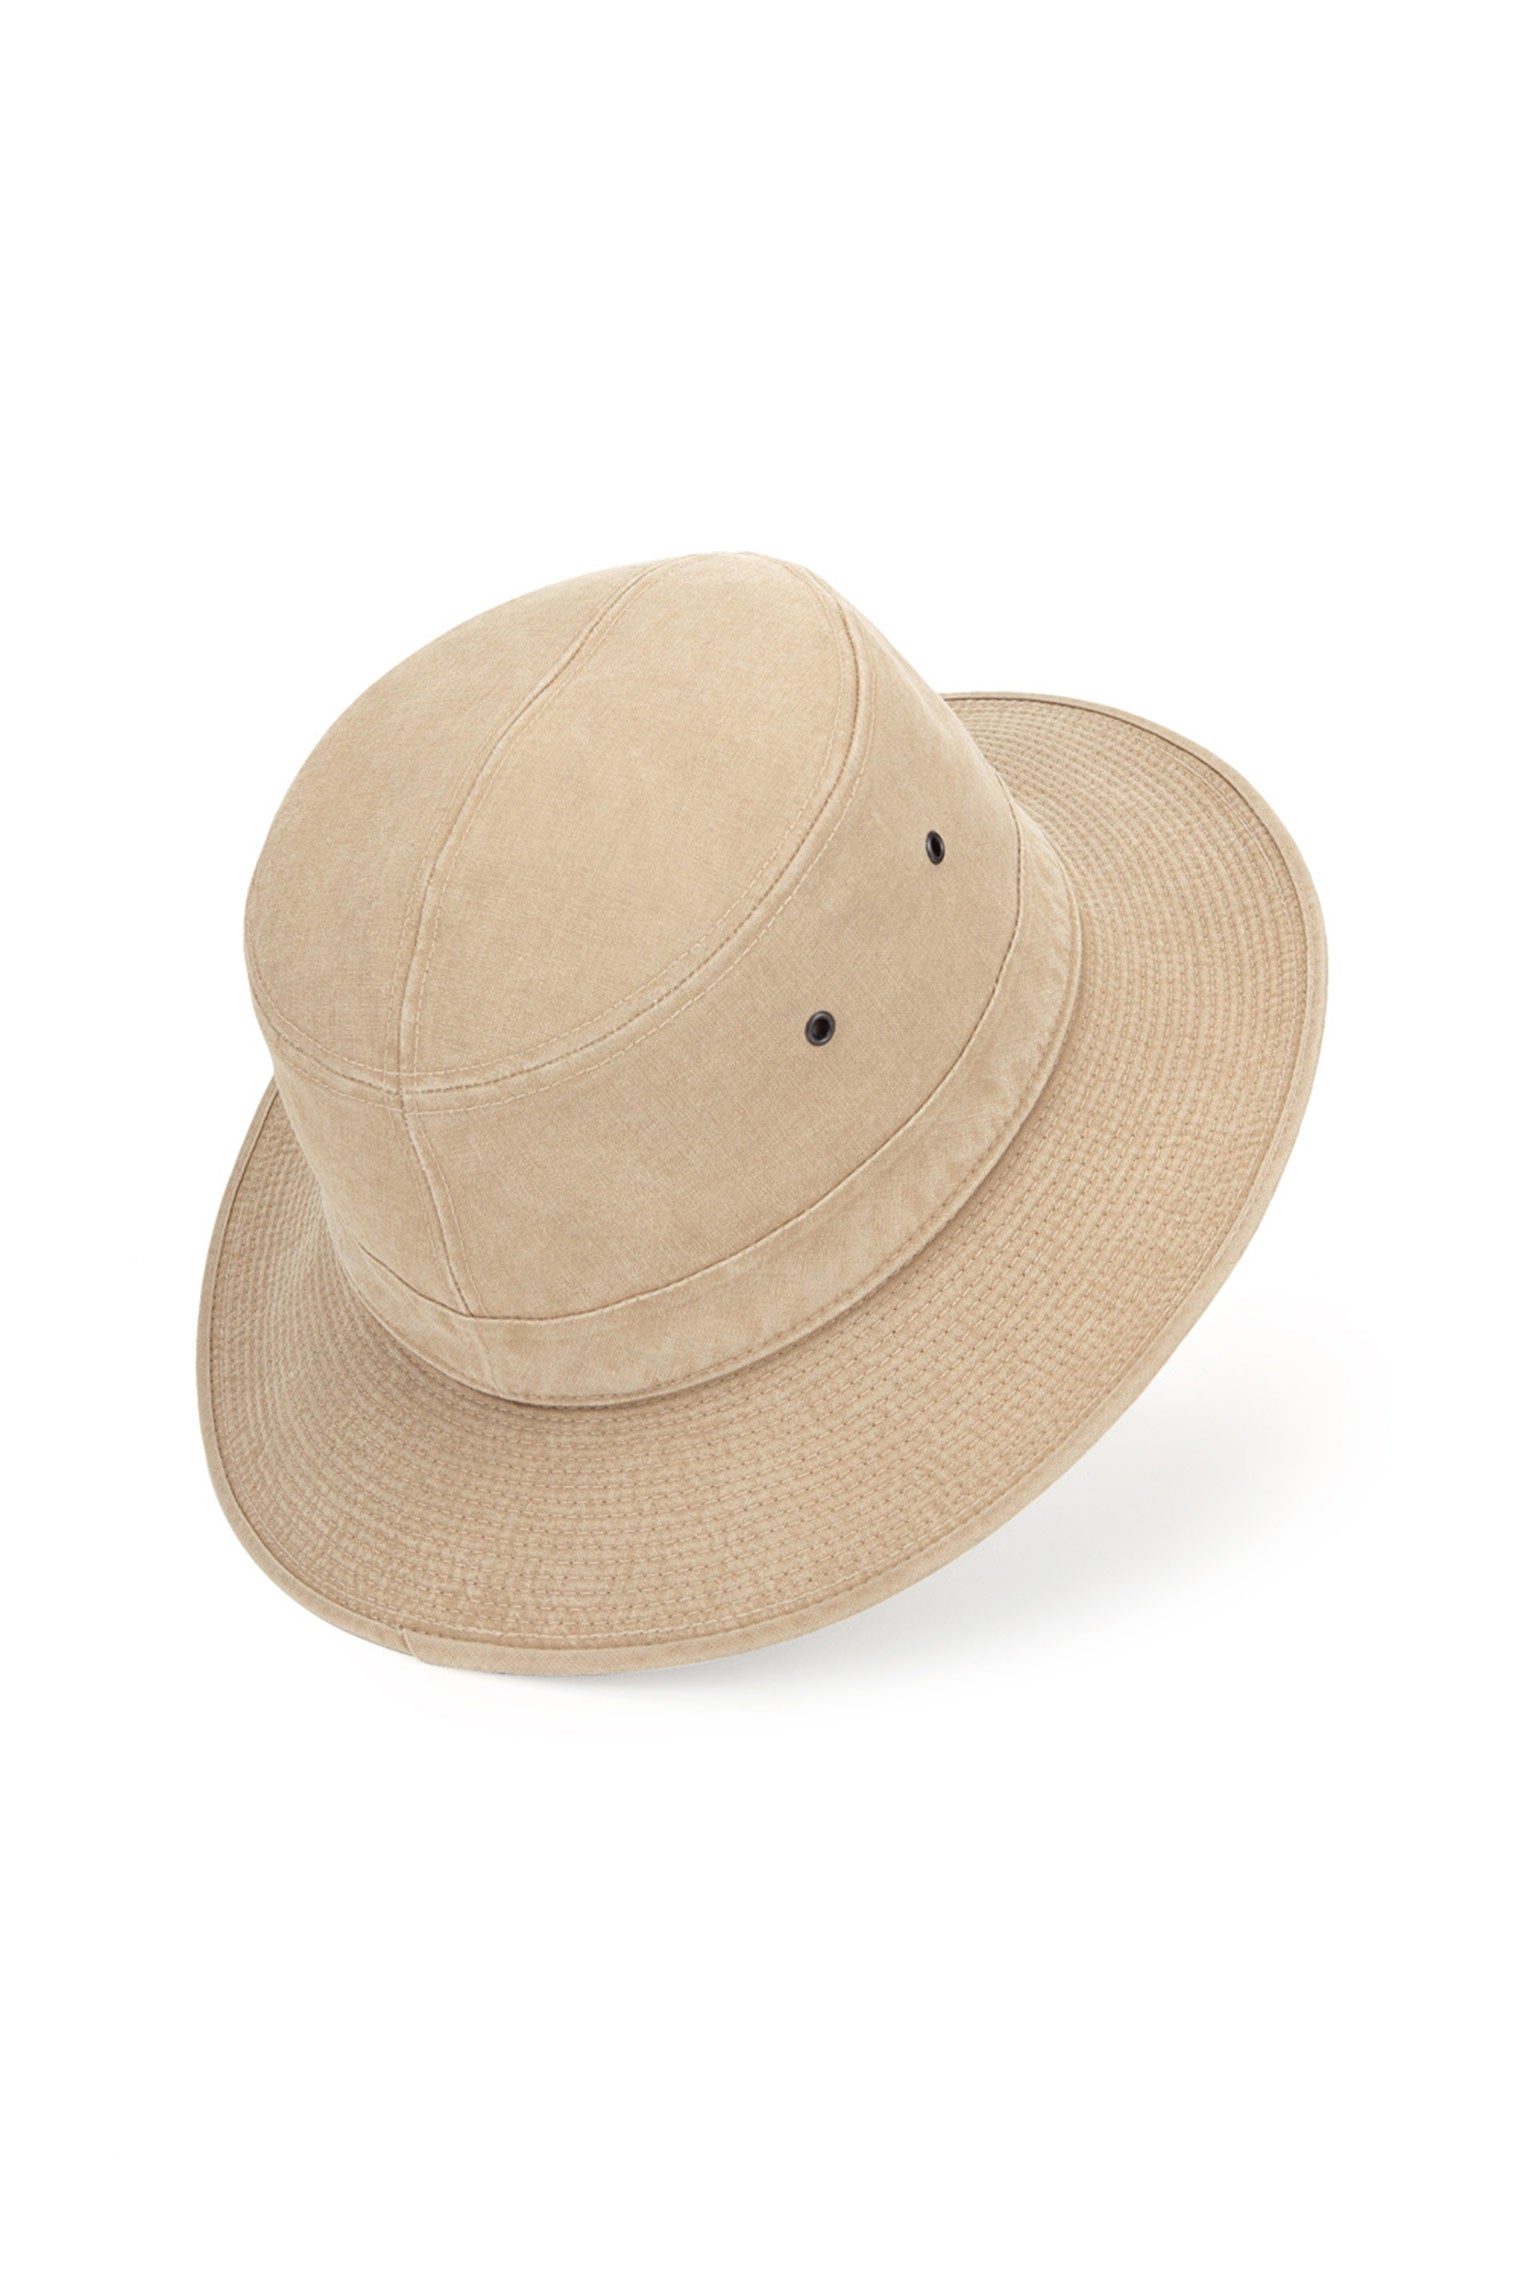 Capri Rollable Hat - Men’s Bucket Hats - Lock & Co. Hatters London UK